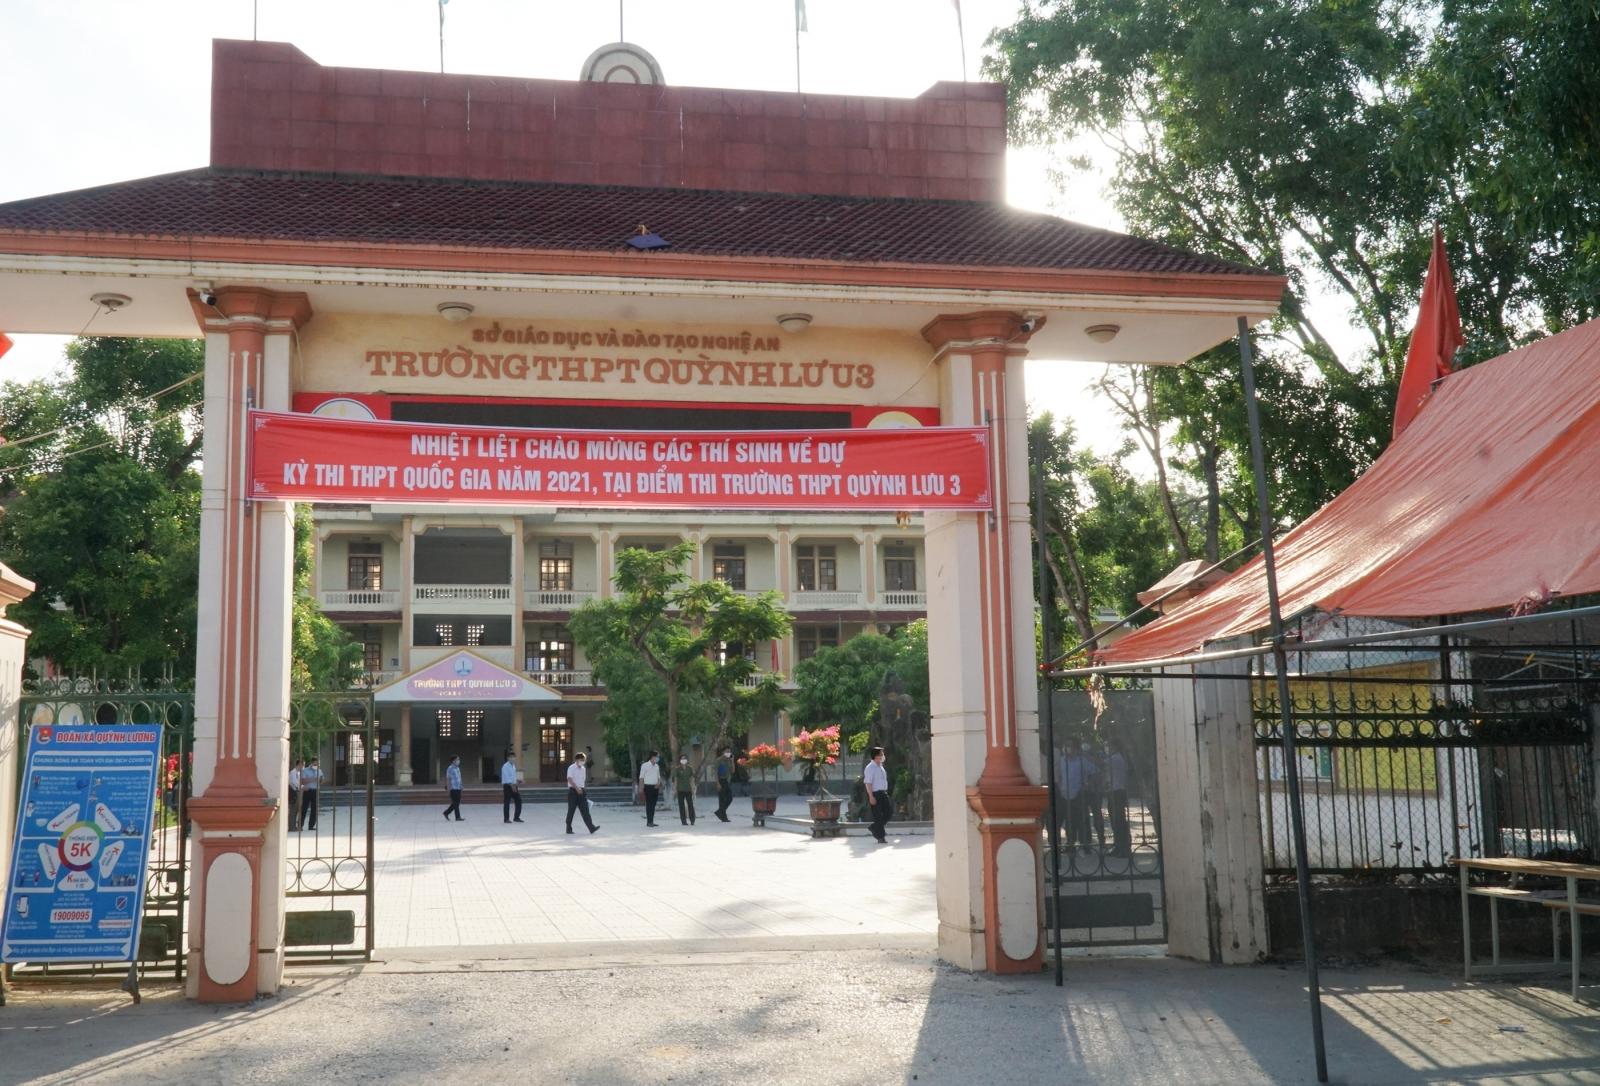 Trường THPT Quỳnh Lưu 3 (huyện Quỳnh Lưu, Nghệ An) có 2 thí sinh F1